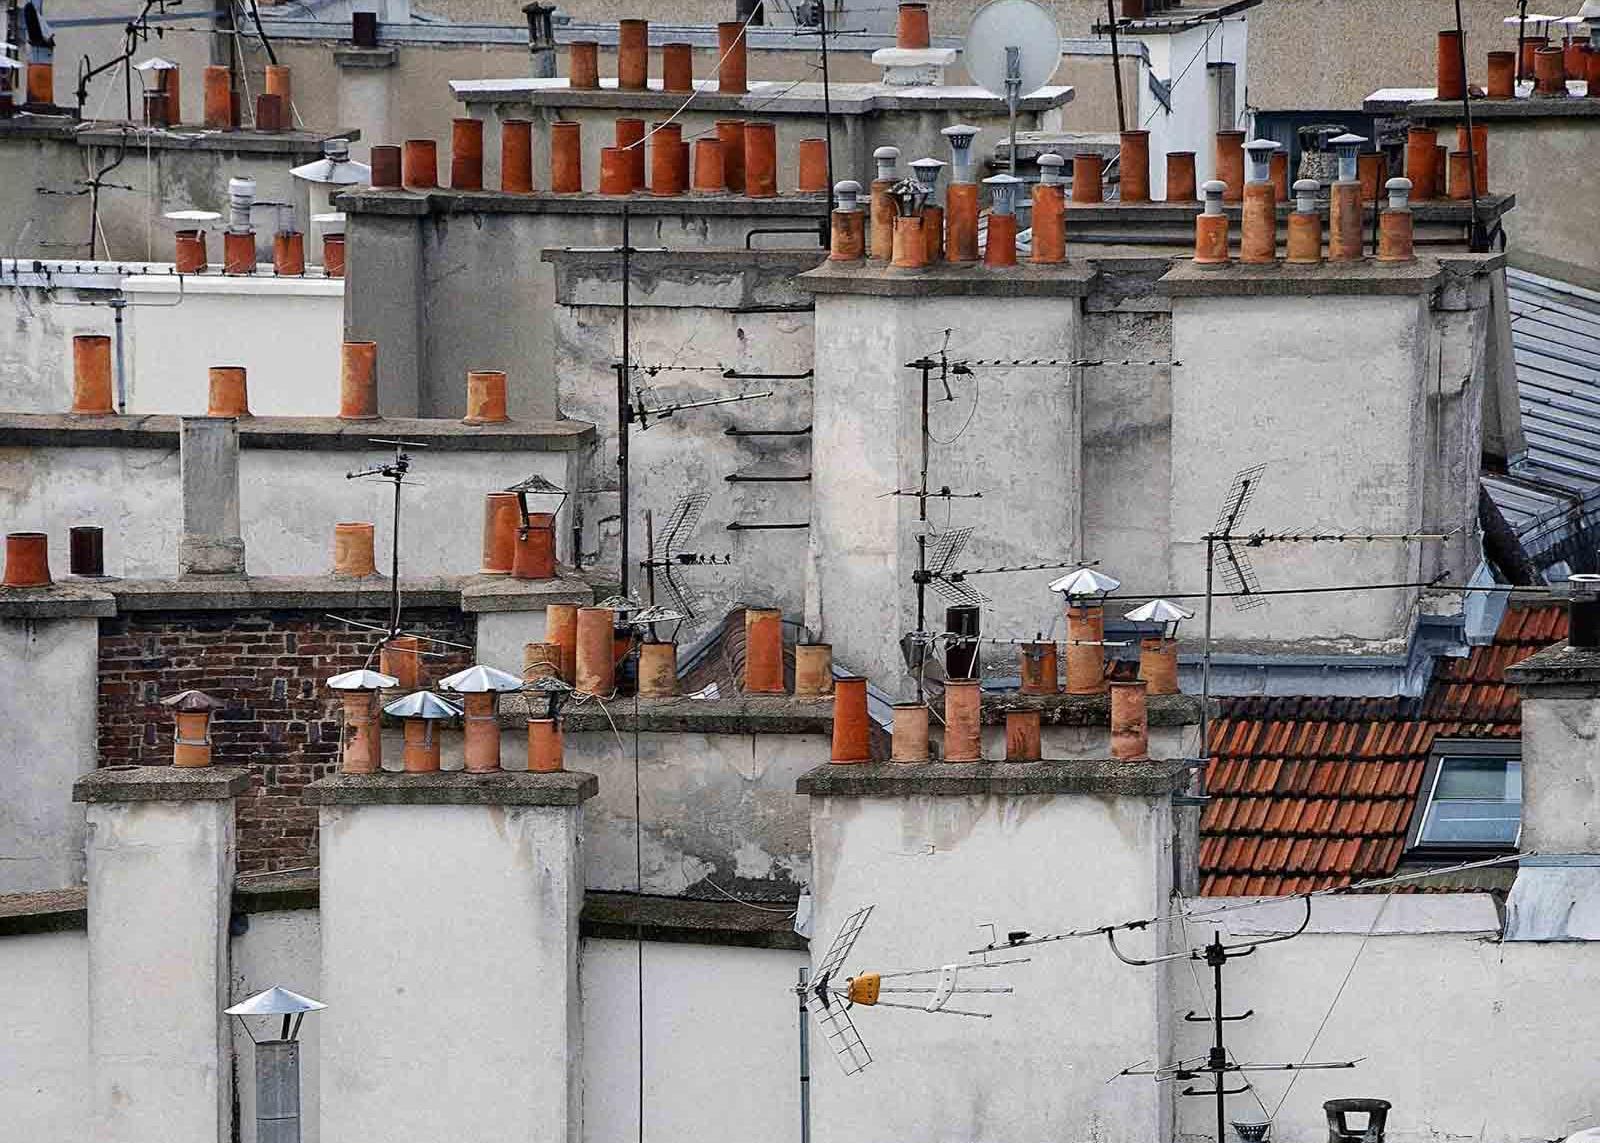 paris roof tops 6 – Michael Wolf, City, Colour, Paris, Photography, Chimneys For Sale 1